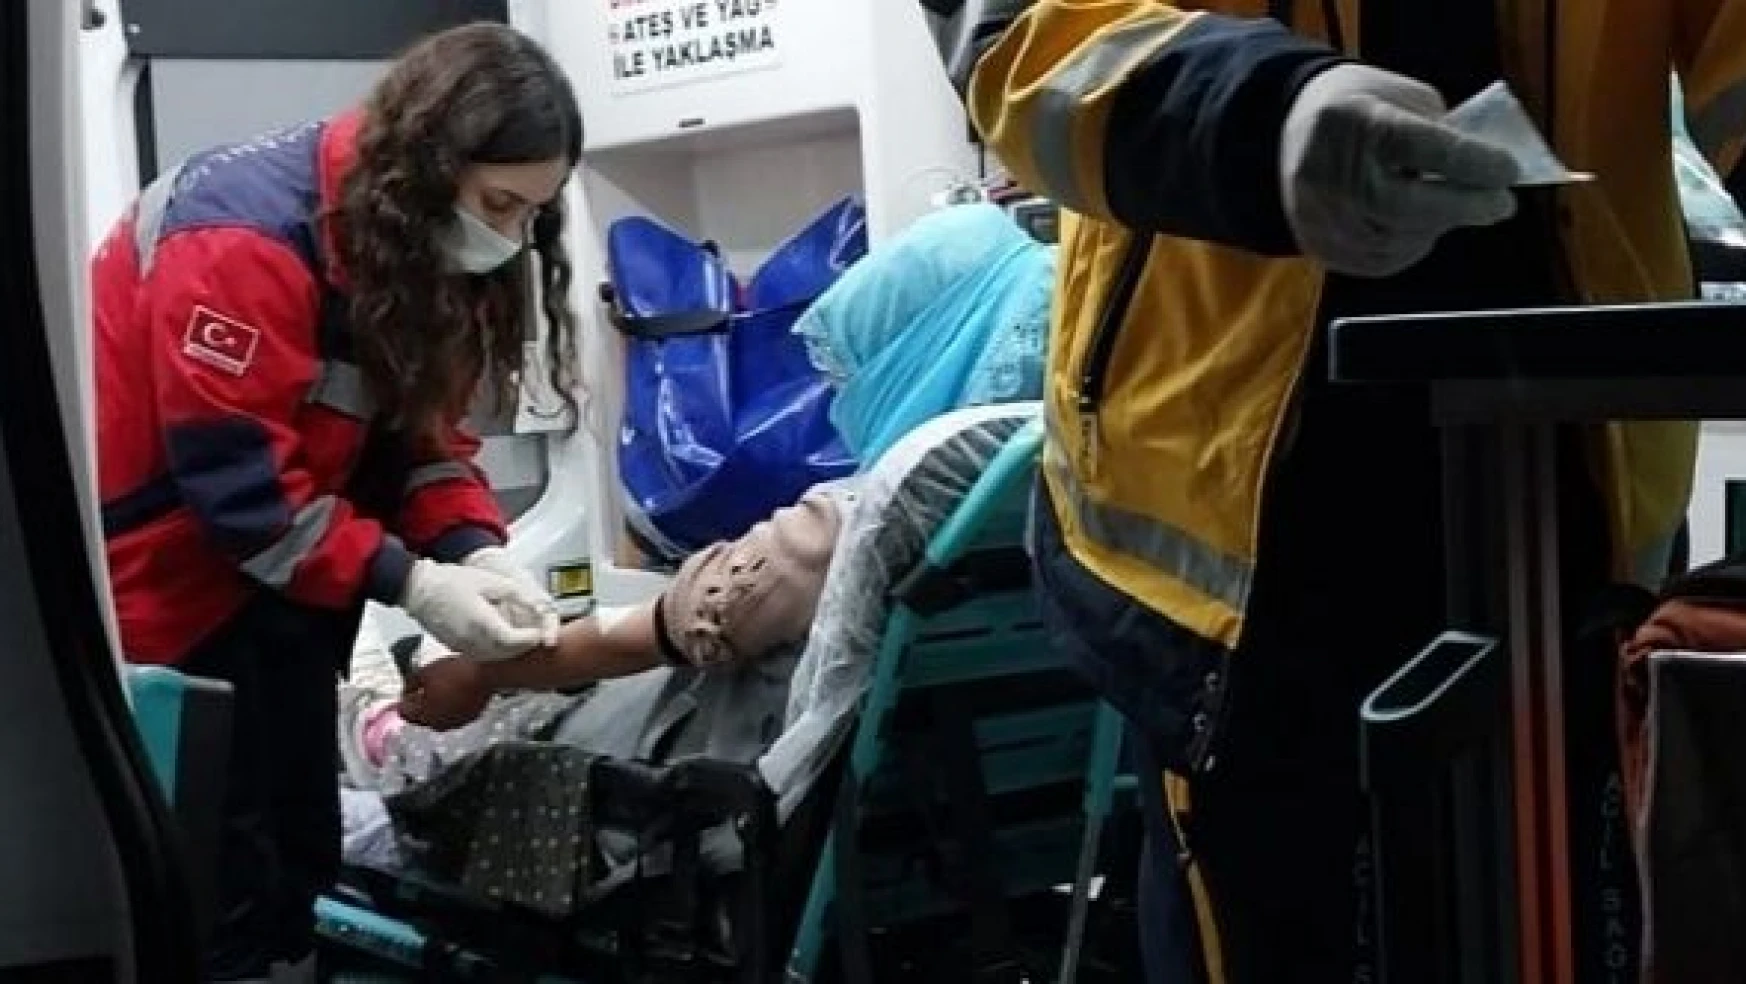 Bitlisli bebeğin anne karnında karla mücadelesi 4 saat sürdü